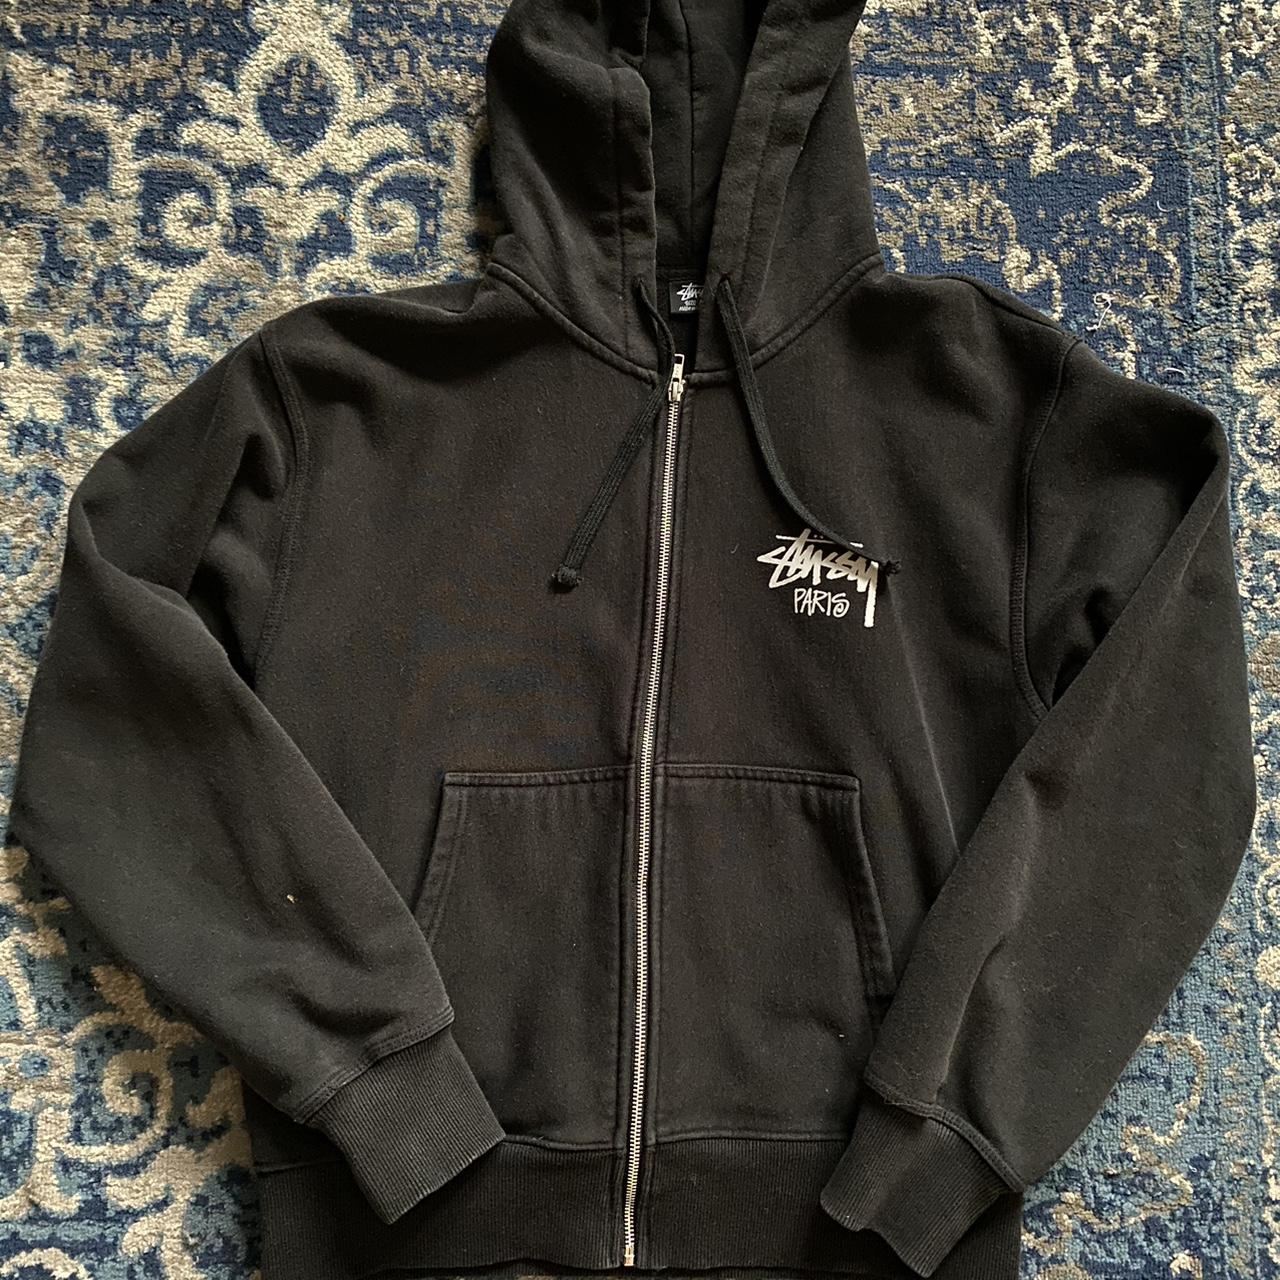 stussy paris black zip up hoodie size... - Depop